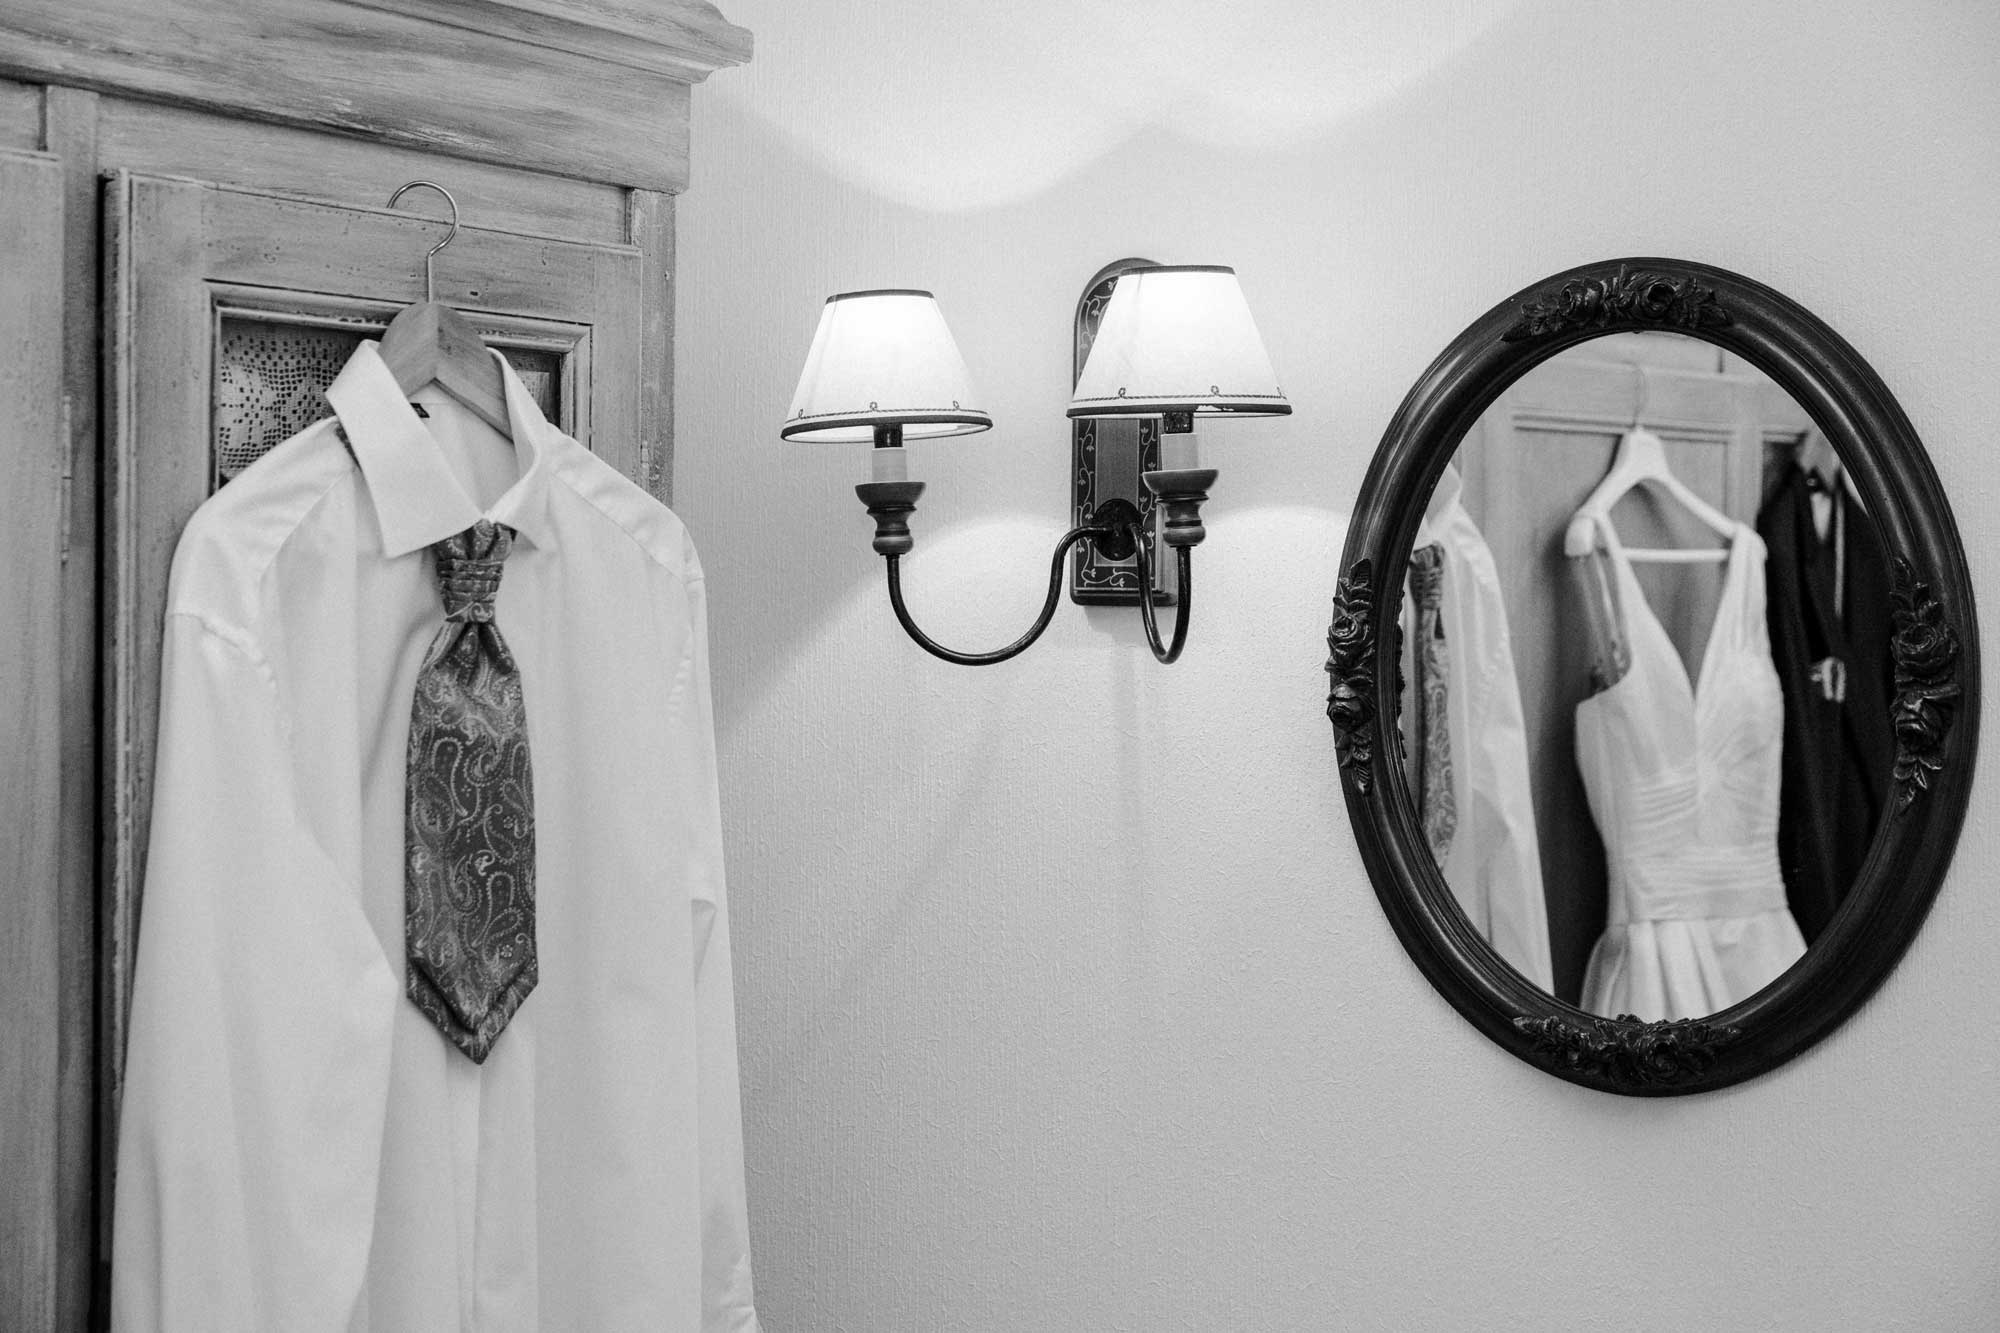 Das weiße Hemd mit Krawatte hängt auf einem Bügel am Schrank. Neben dem Schrank ist eine Wandleuchte und daneben ein runder Spiegel. In dem Spiegel spiegeln sich das Brautkleid und das Hemd mit Krawatte sowie der Anzug. Es ist eine schwarz weiß Aufnahme.